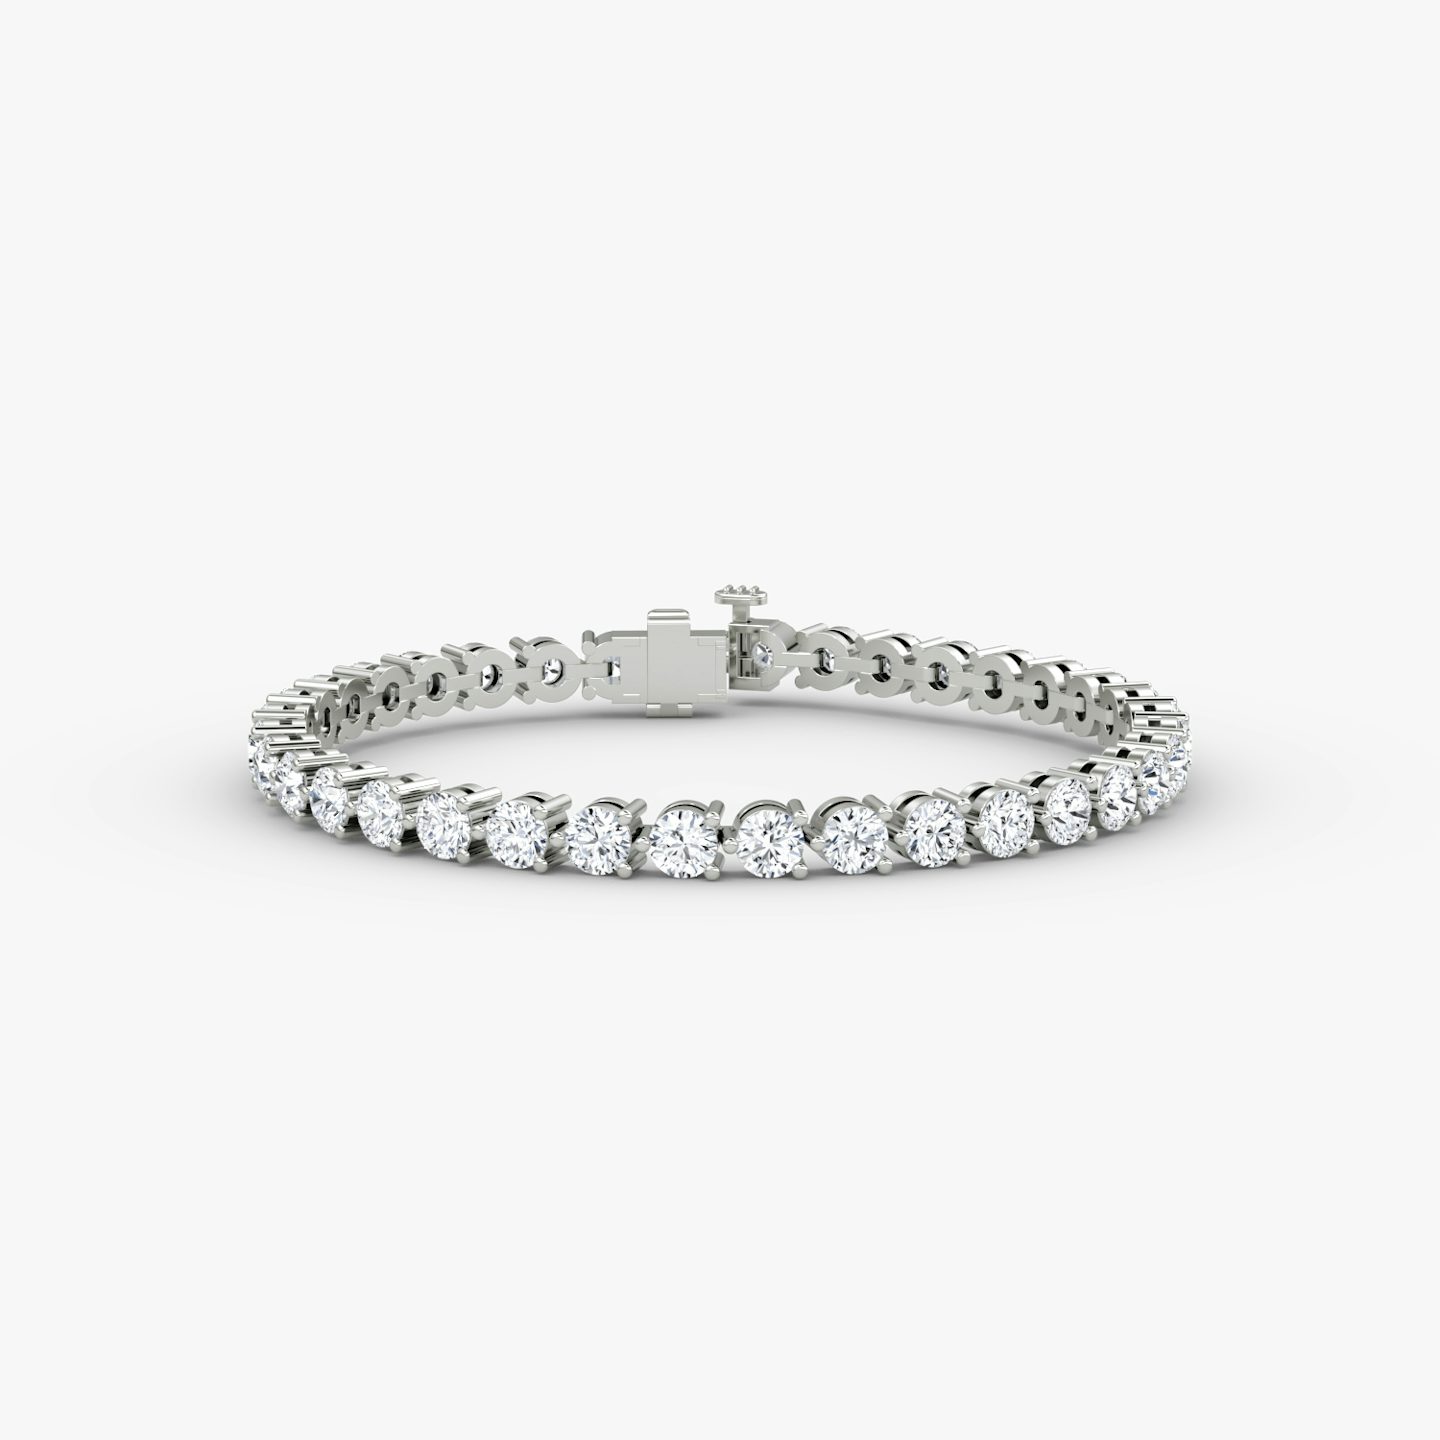 Bracelet Tennis | Rond Brillant | 14k | Or blanc 18 carats | Taille des diamants: Large | Longueur de la chaîne: 5.5